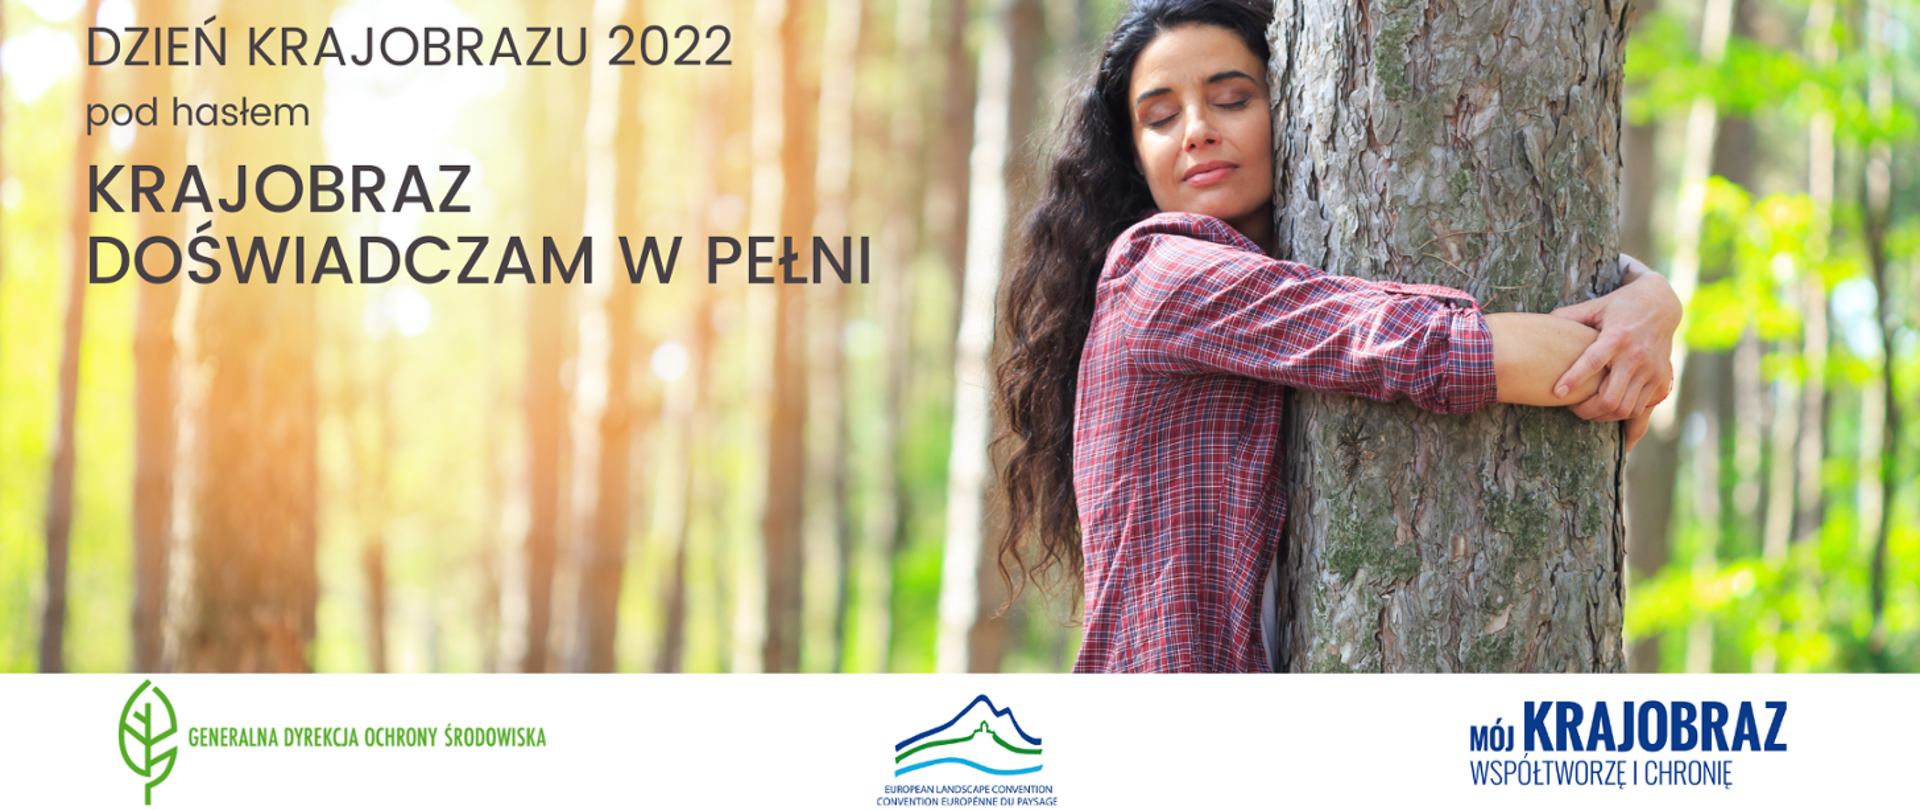 Dzień krajobrazu 2022 pod hasłem Krajobraz doświadczam w pełni. Po prawej stronie zdjęcia Kobieta w kraciastej koszuli przytula pień drzewa. W tle las.